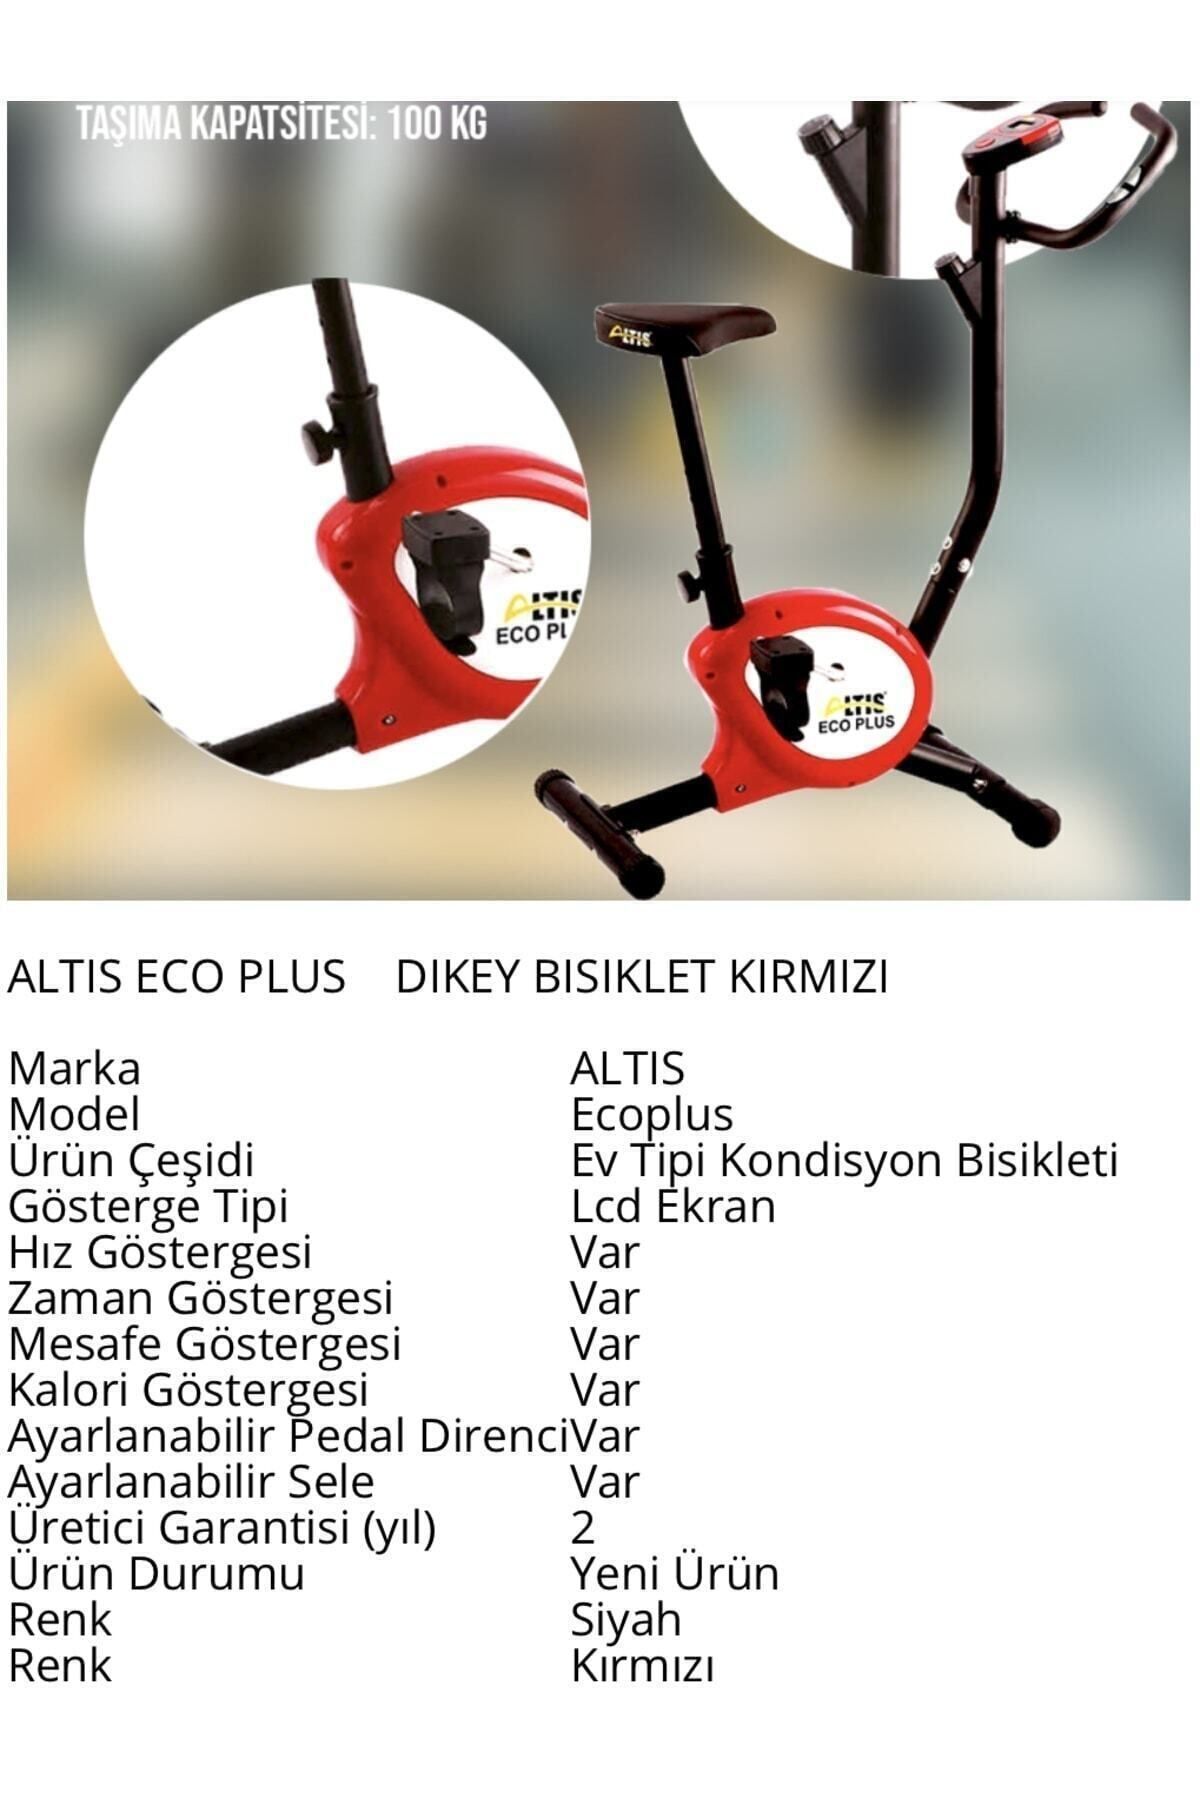 ALTIS Eco Plus Dikey Bisiklet Kırmızı